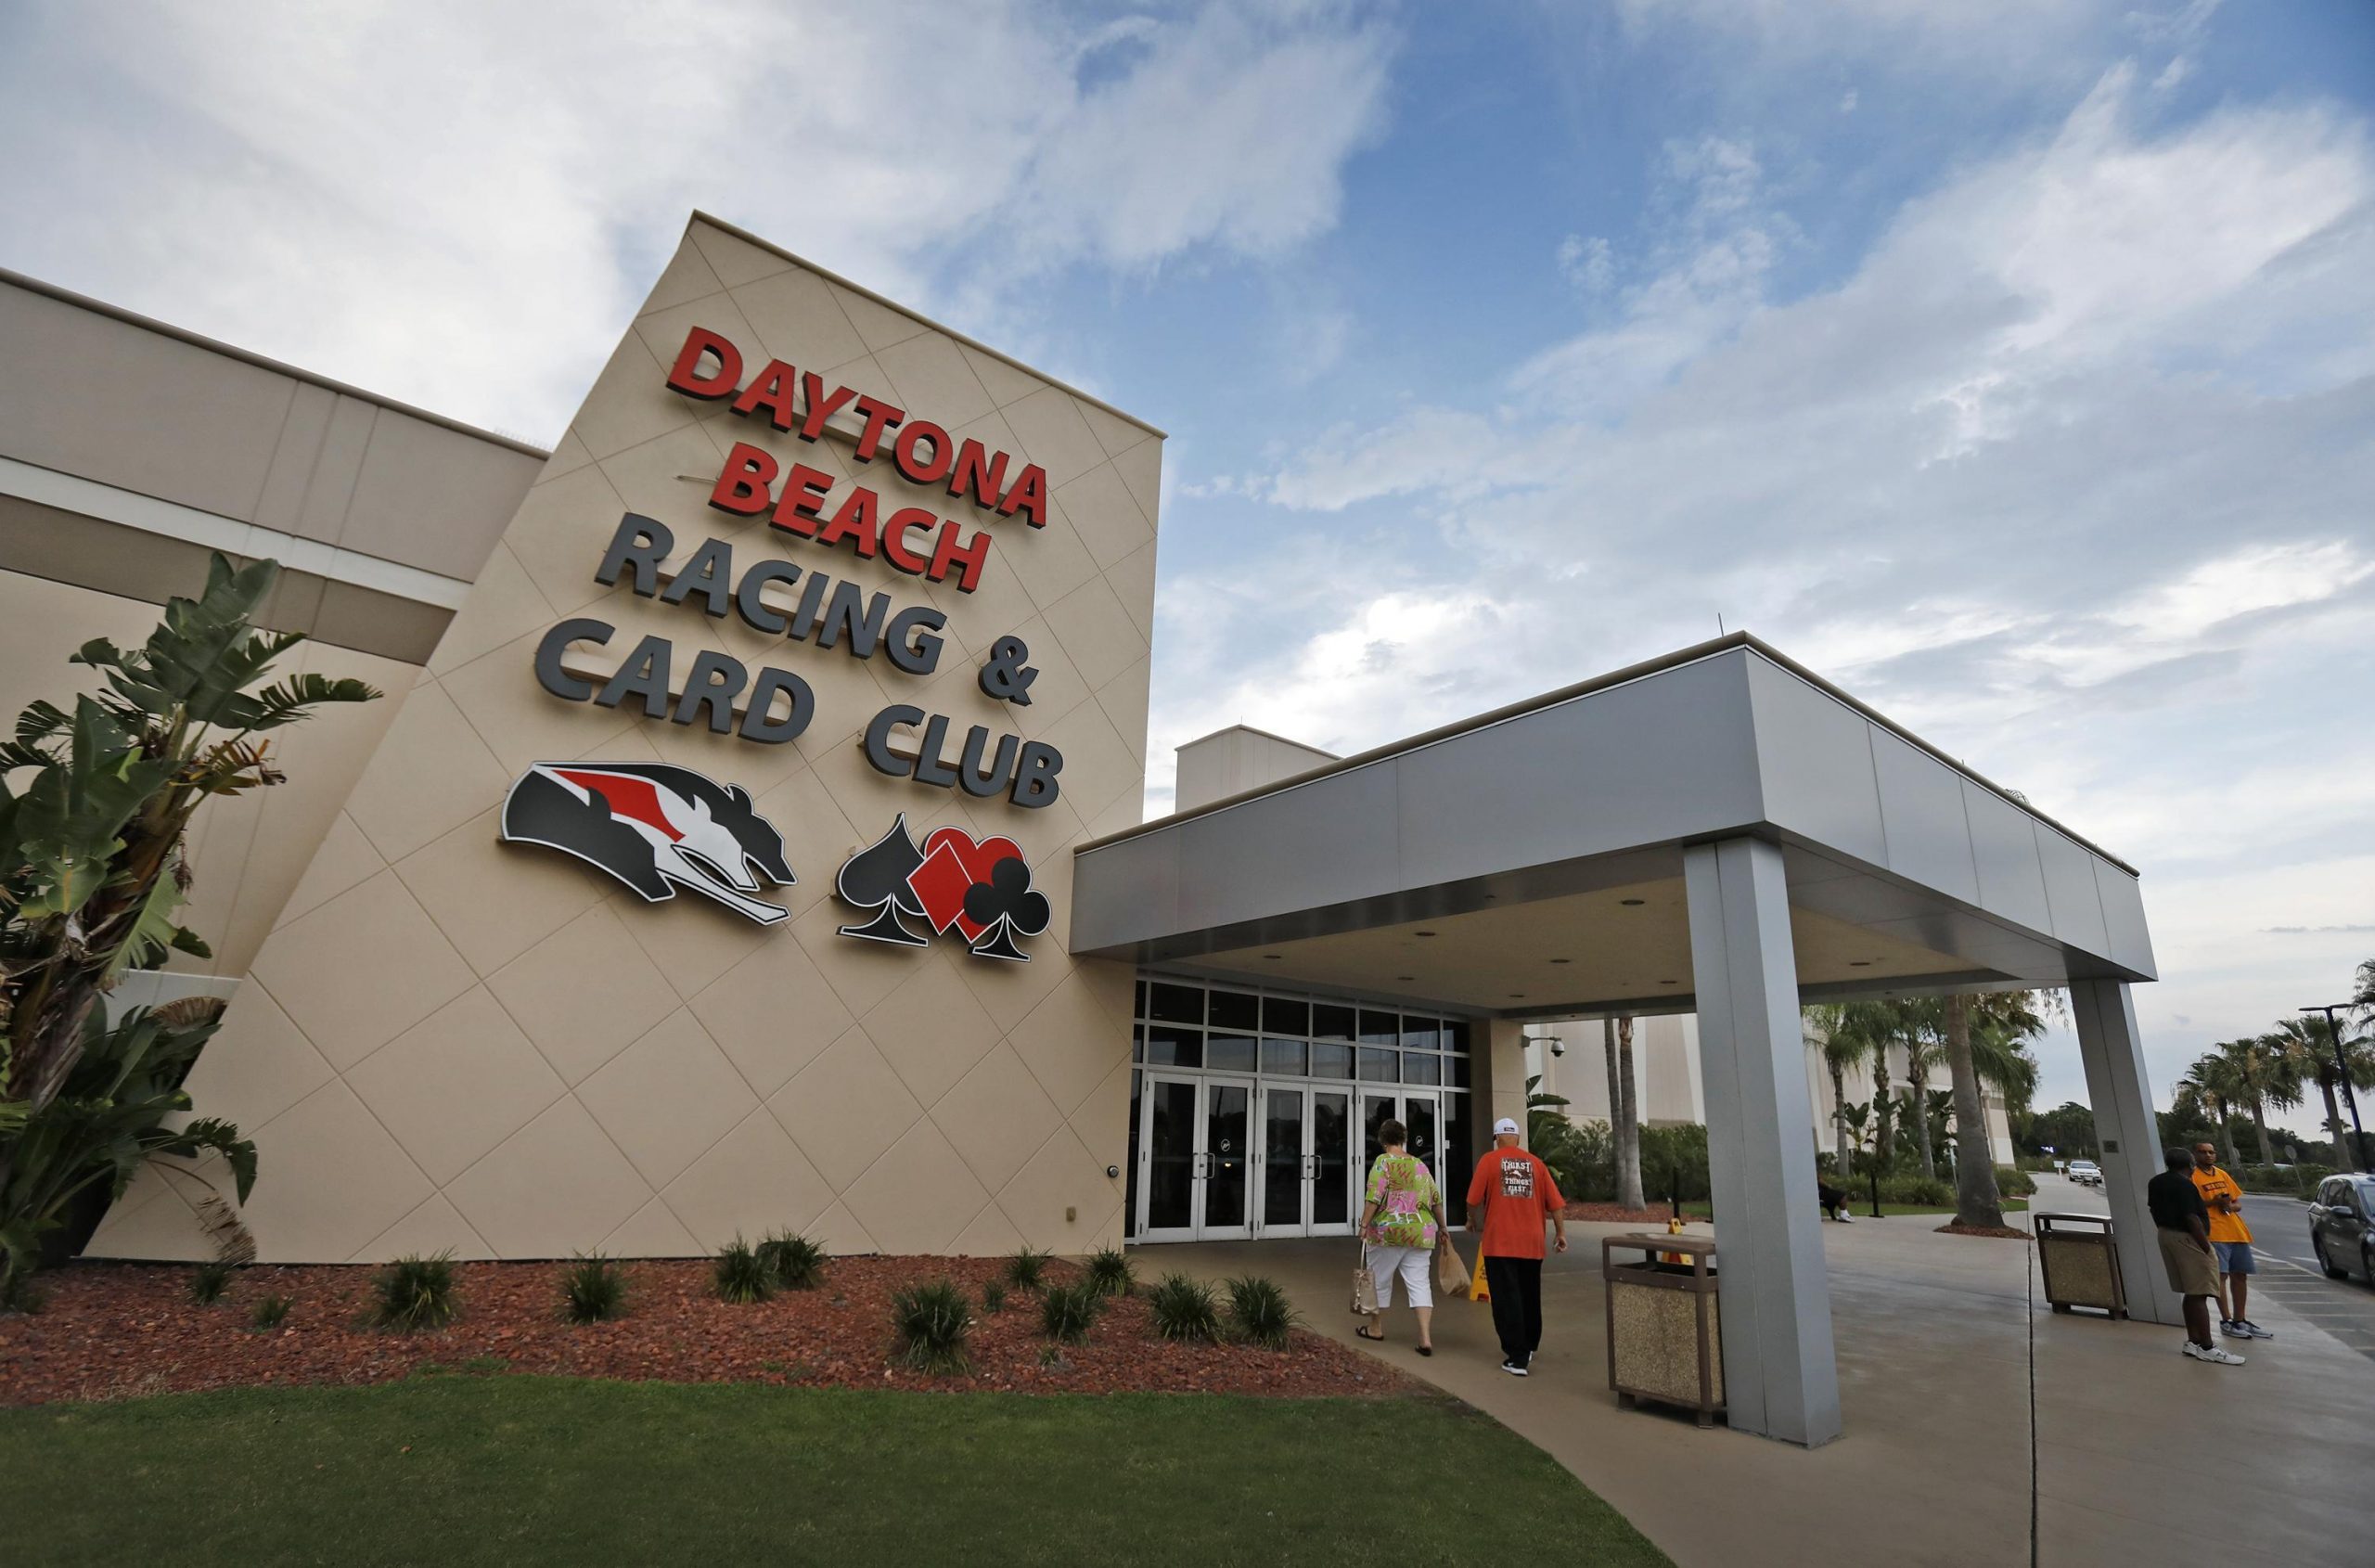 Daytona, kamar poker Orange City akan dibuka - Olahraga - Daytona Beach News-Journal Online